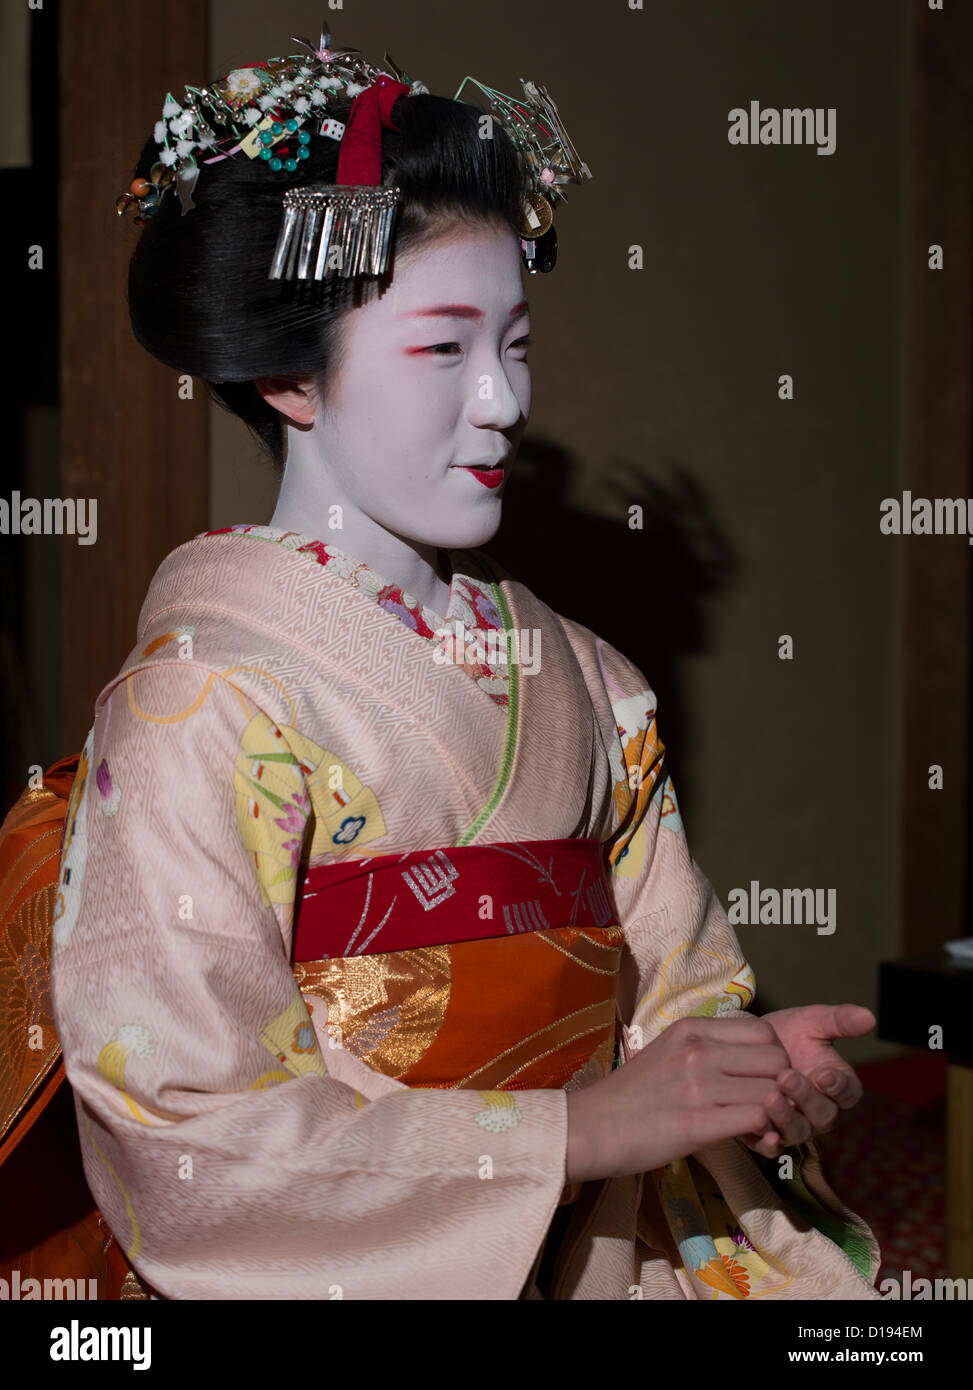 Eriha à 17 ans ( stagiaire ) geisha maiko recevez des invités dans une maison de thé de Gion à Kyoto, Japon Banque D'Images